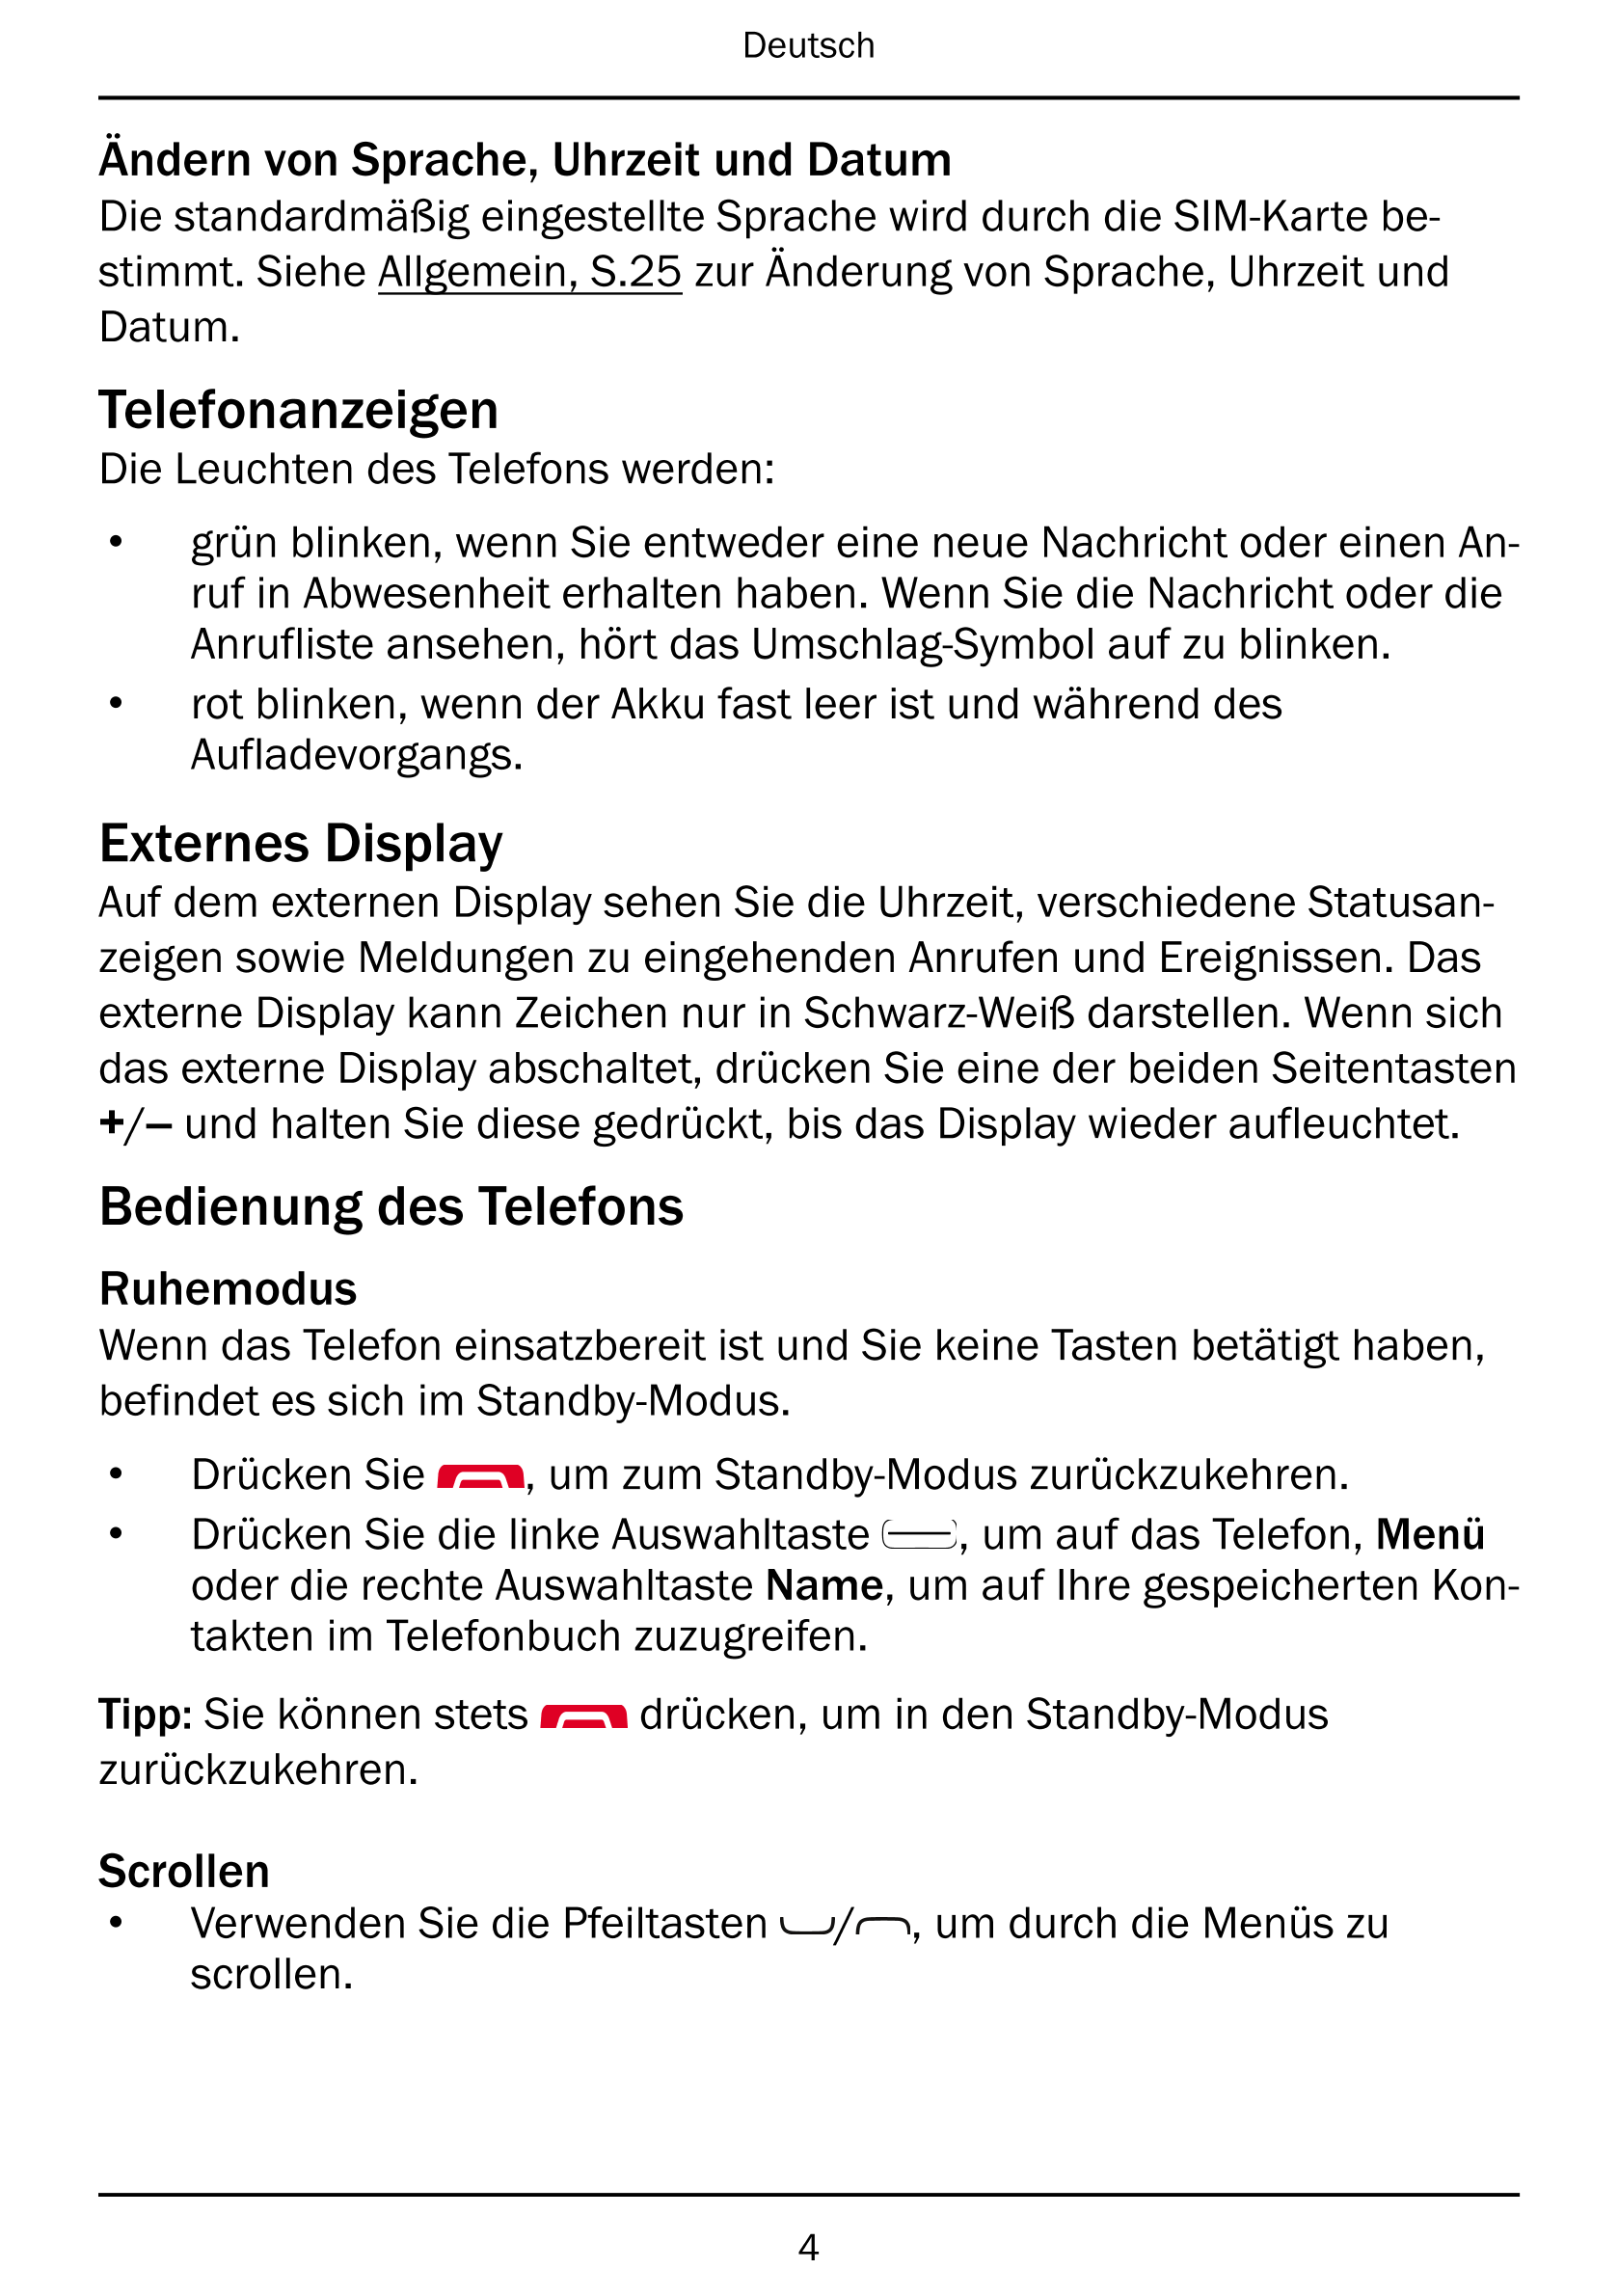 Deutsch
Ändern von Sprache, Uhrzeit und Datum
Die standardmäßig eingestellte Sprache wird durch die SIM-Karte be-
stimmt. Siehe 